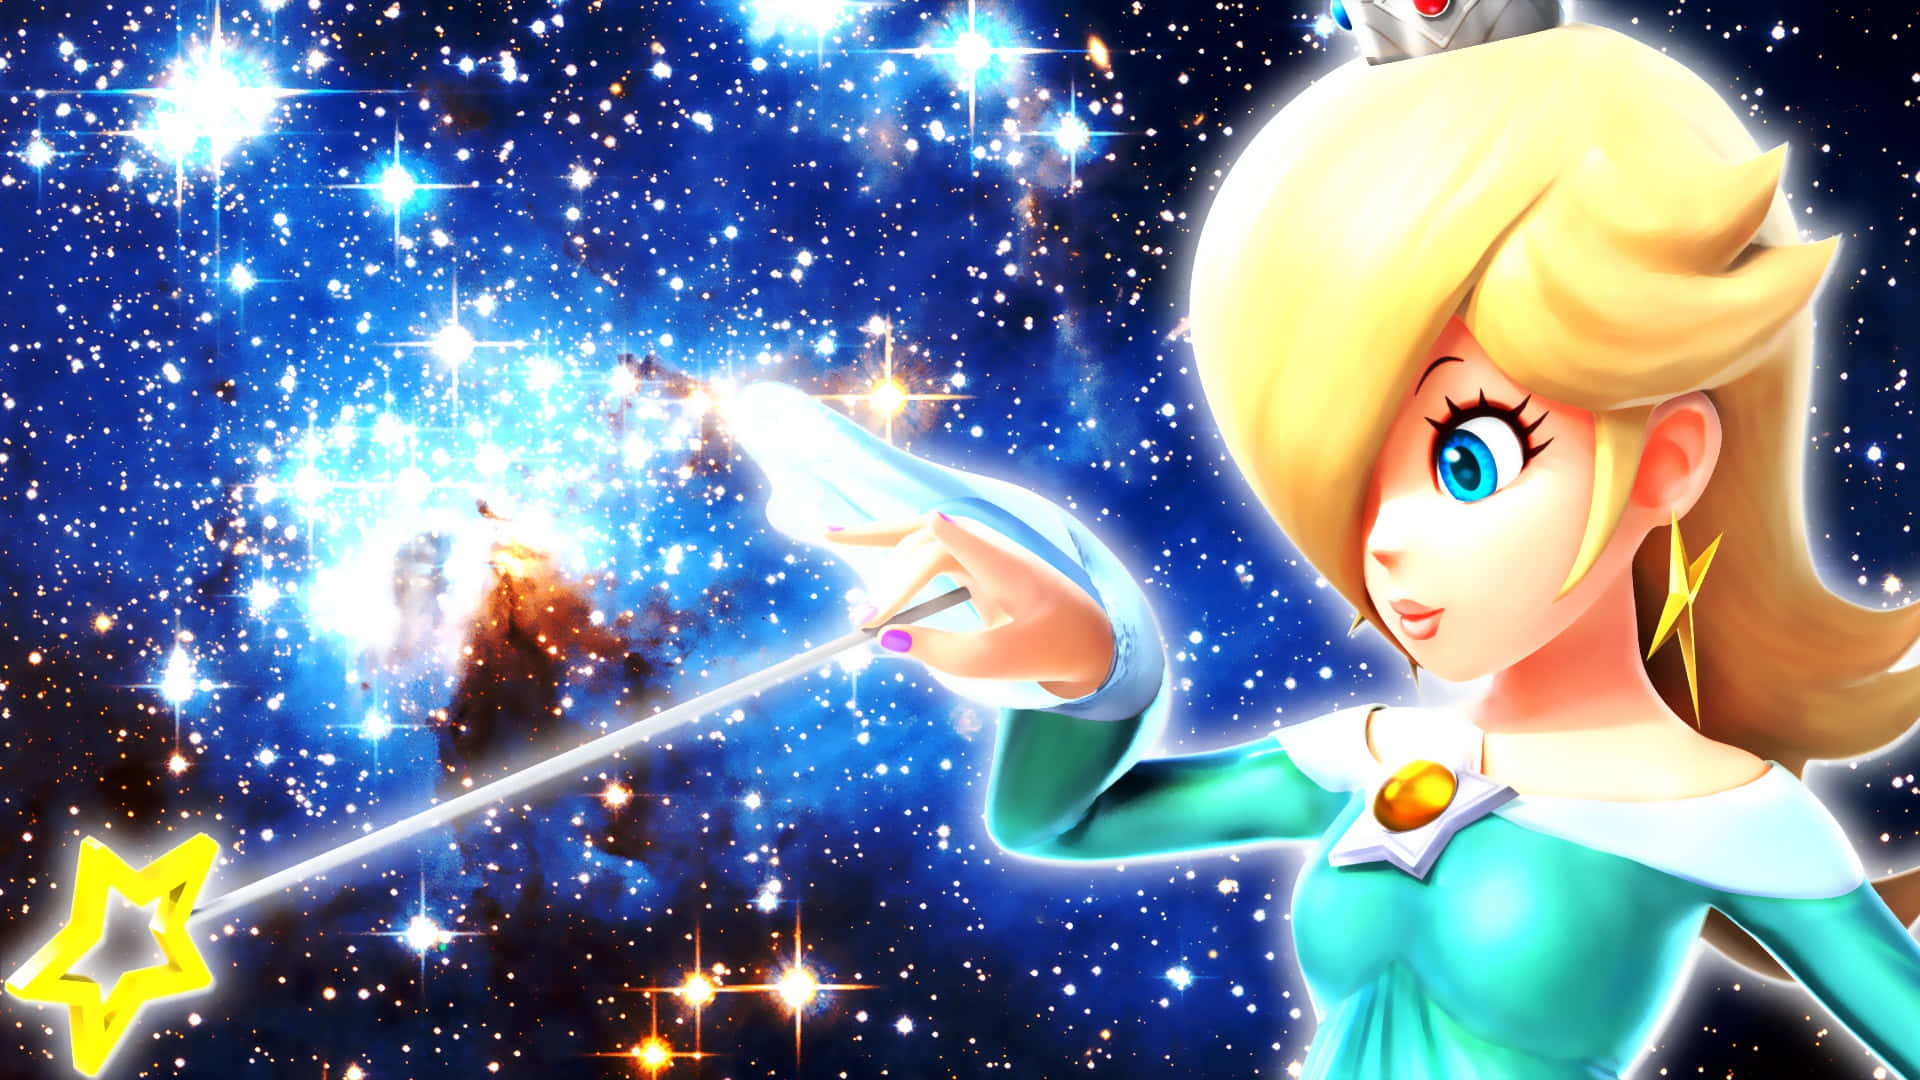 Enchanting Princess Rosalina From Super Mario Galaxy Game Wallpaper